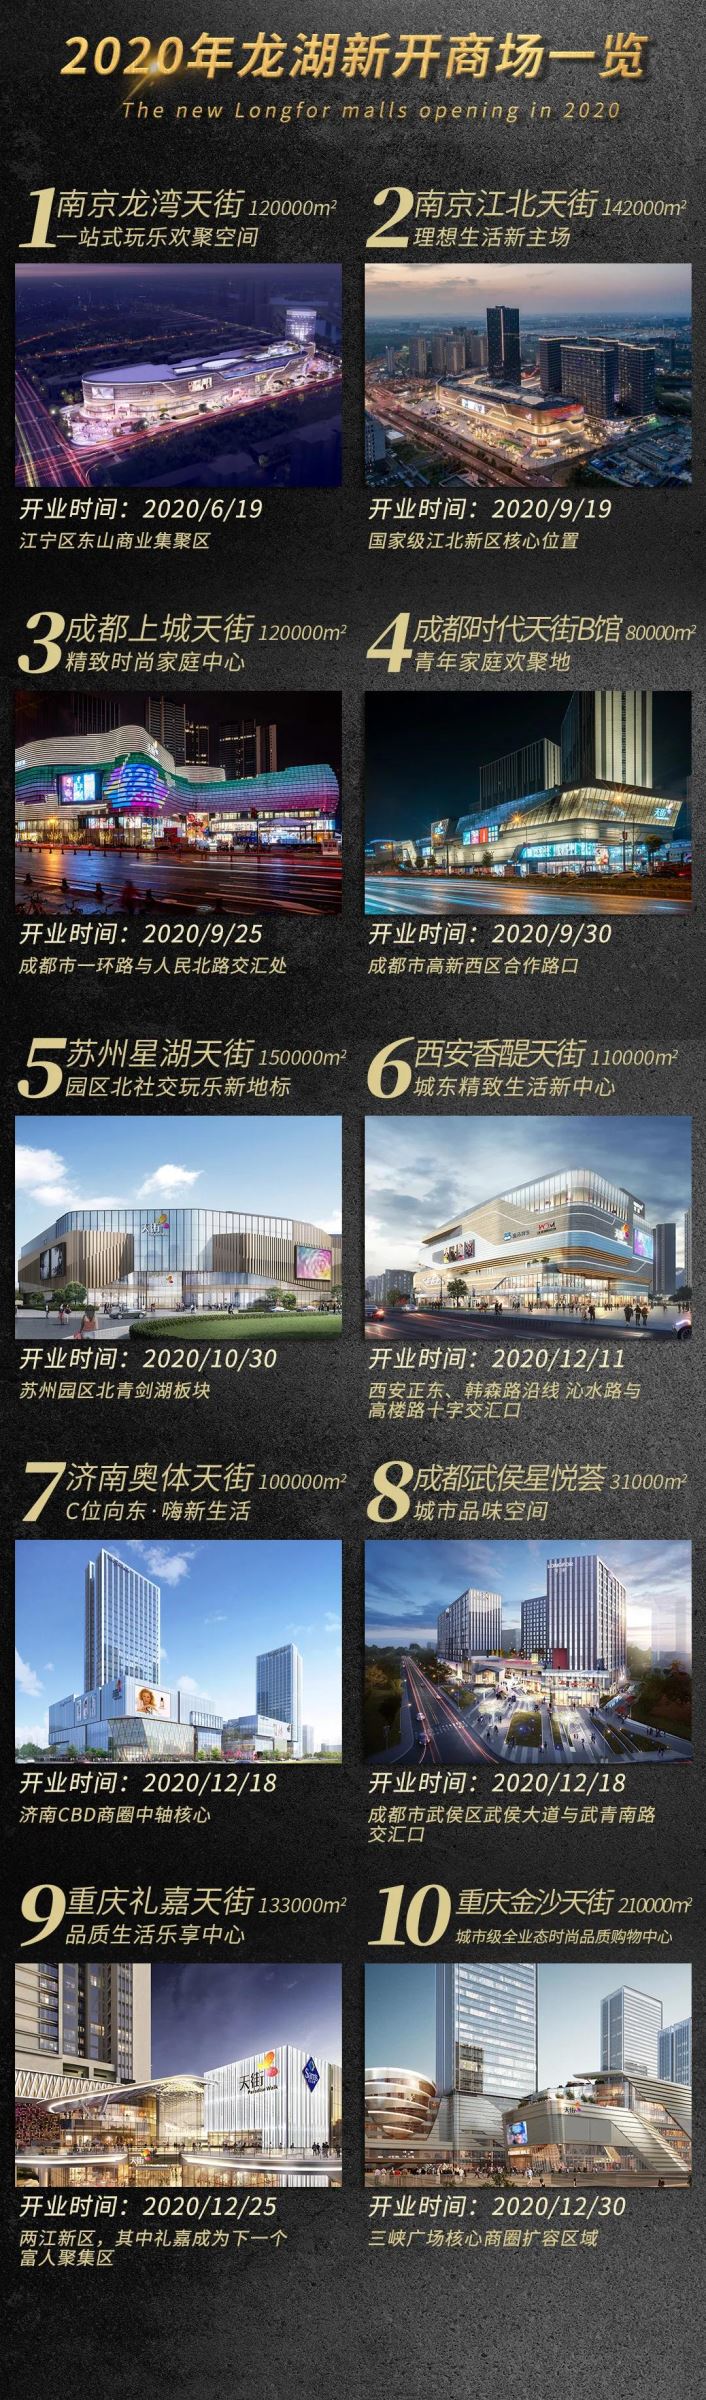 长沙洋湖天街、武汉江宸天街均在2021年6月开业